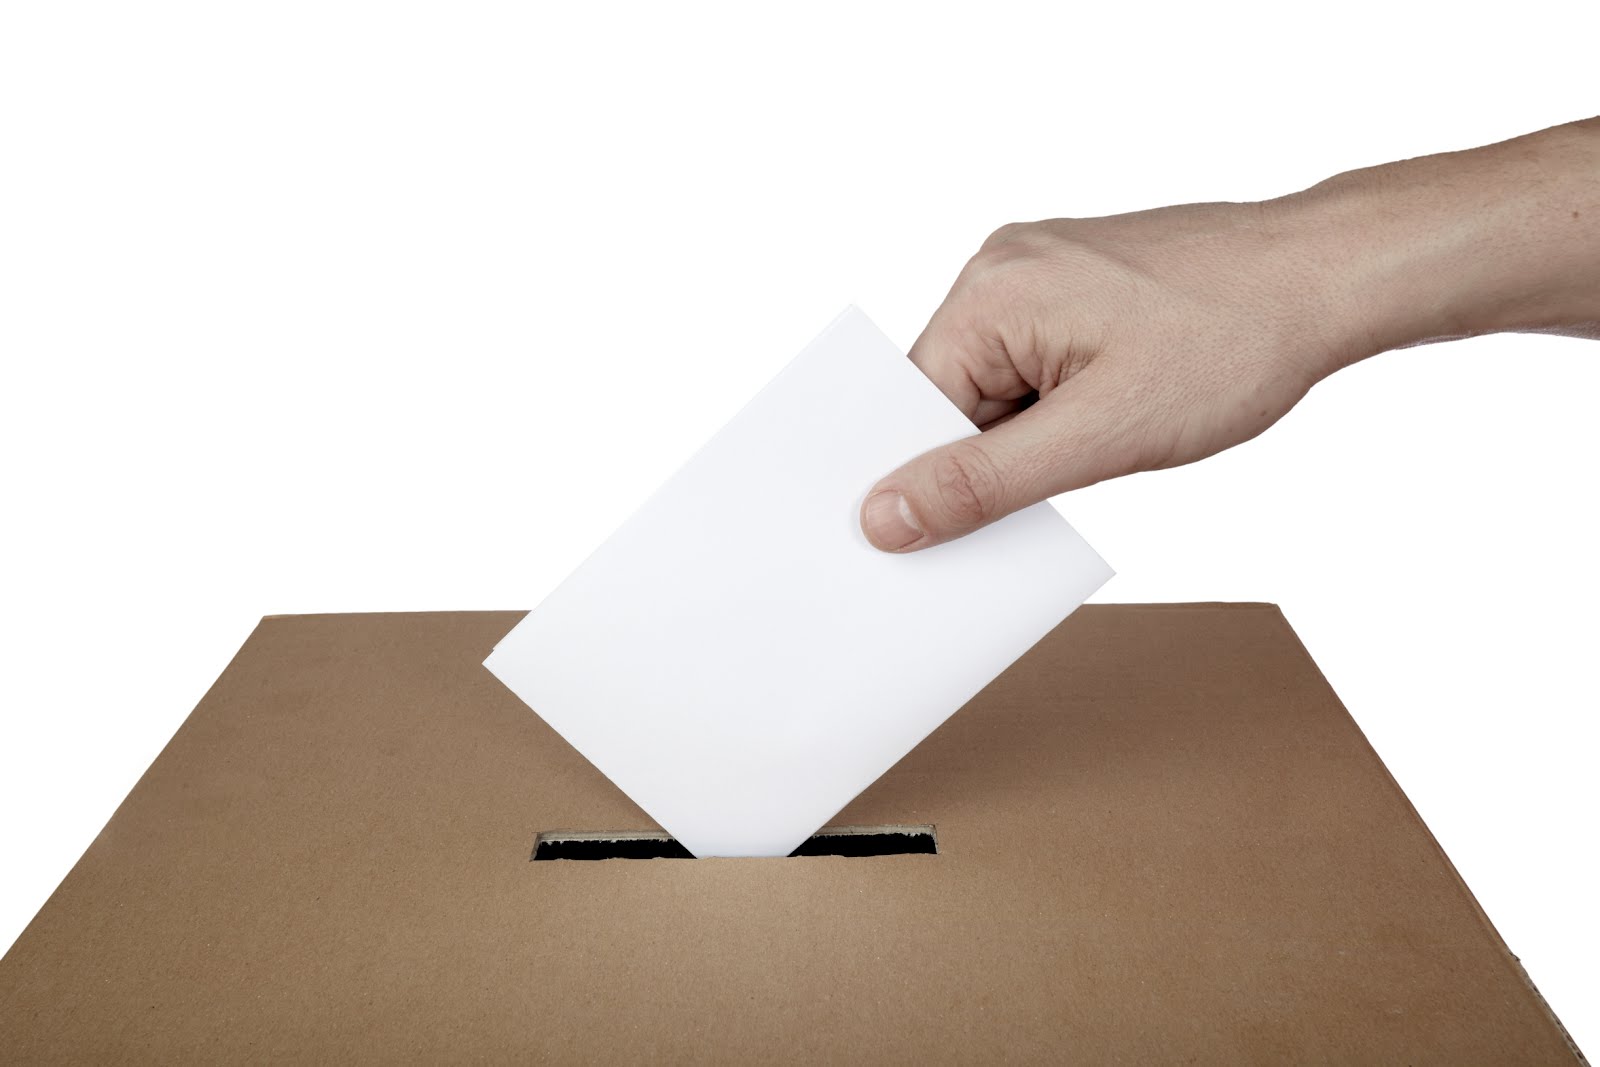 நாட்டின் 12 மாவட்டங்களில் ஒத்திகை தேர்தல்